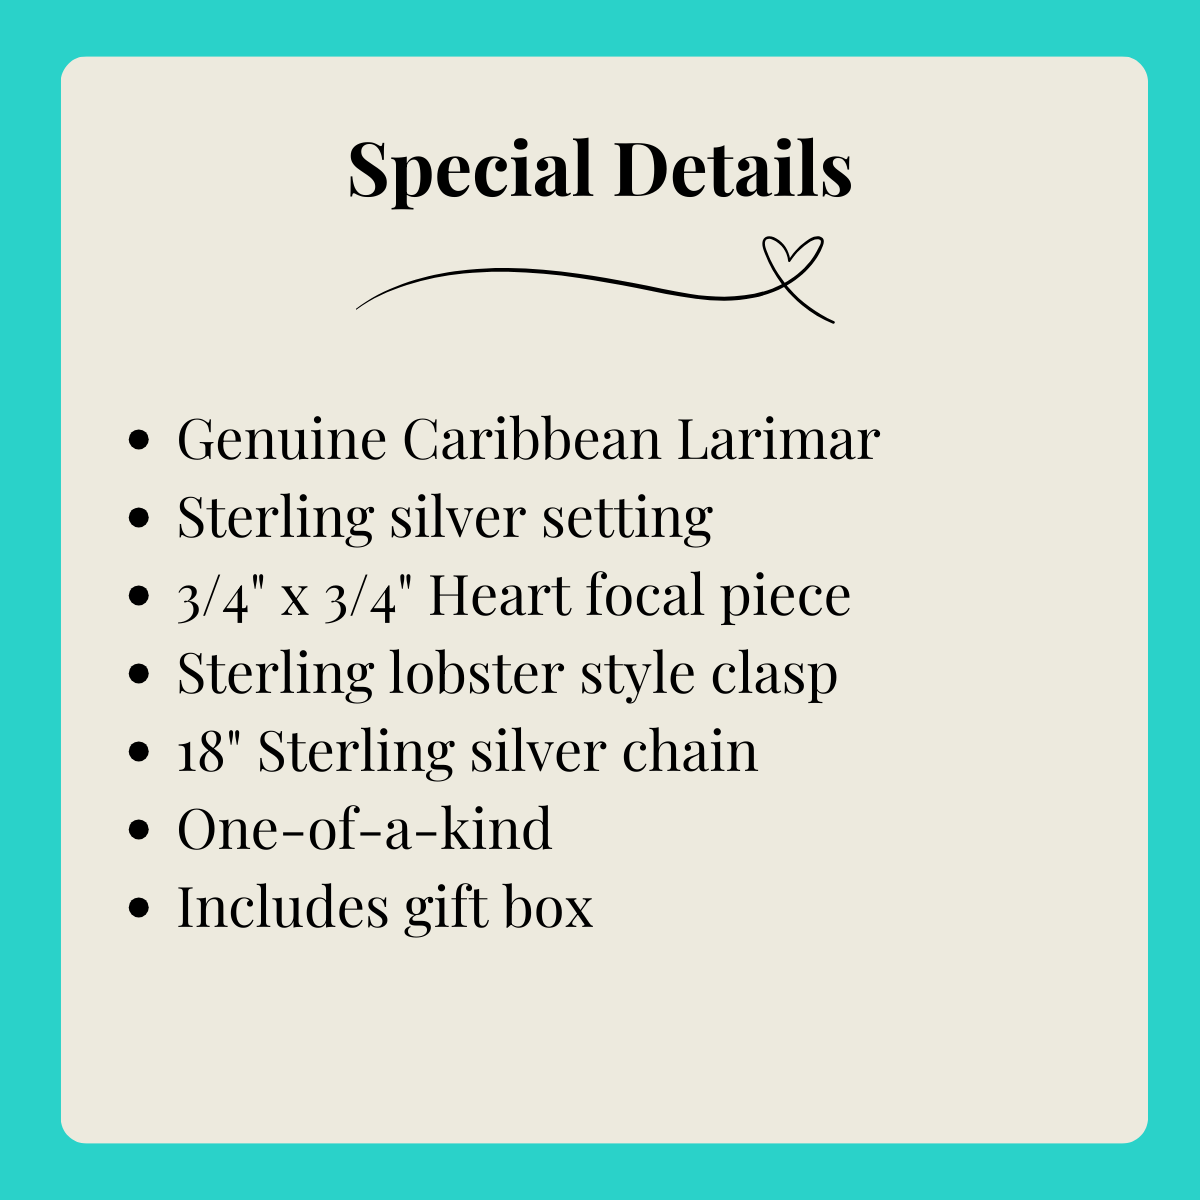 Larimar Heart Silver Necklace